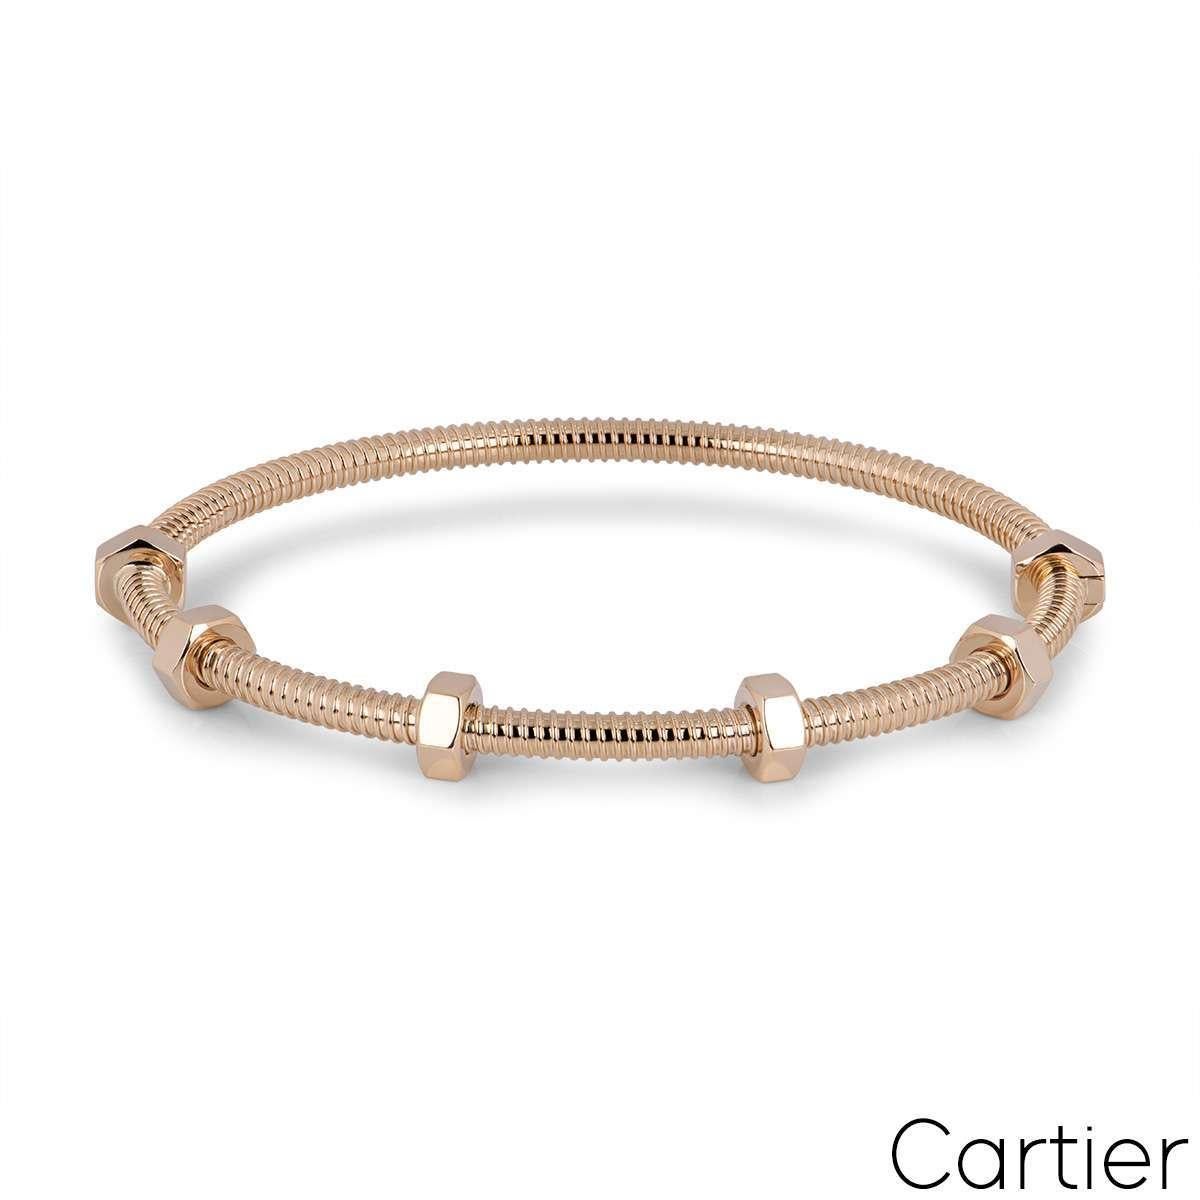 Cartier Rose Gold Ecrou De Cartier Bracelet Size 18 B6049518 In Excellent Condition For Sale In London, GB